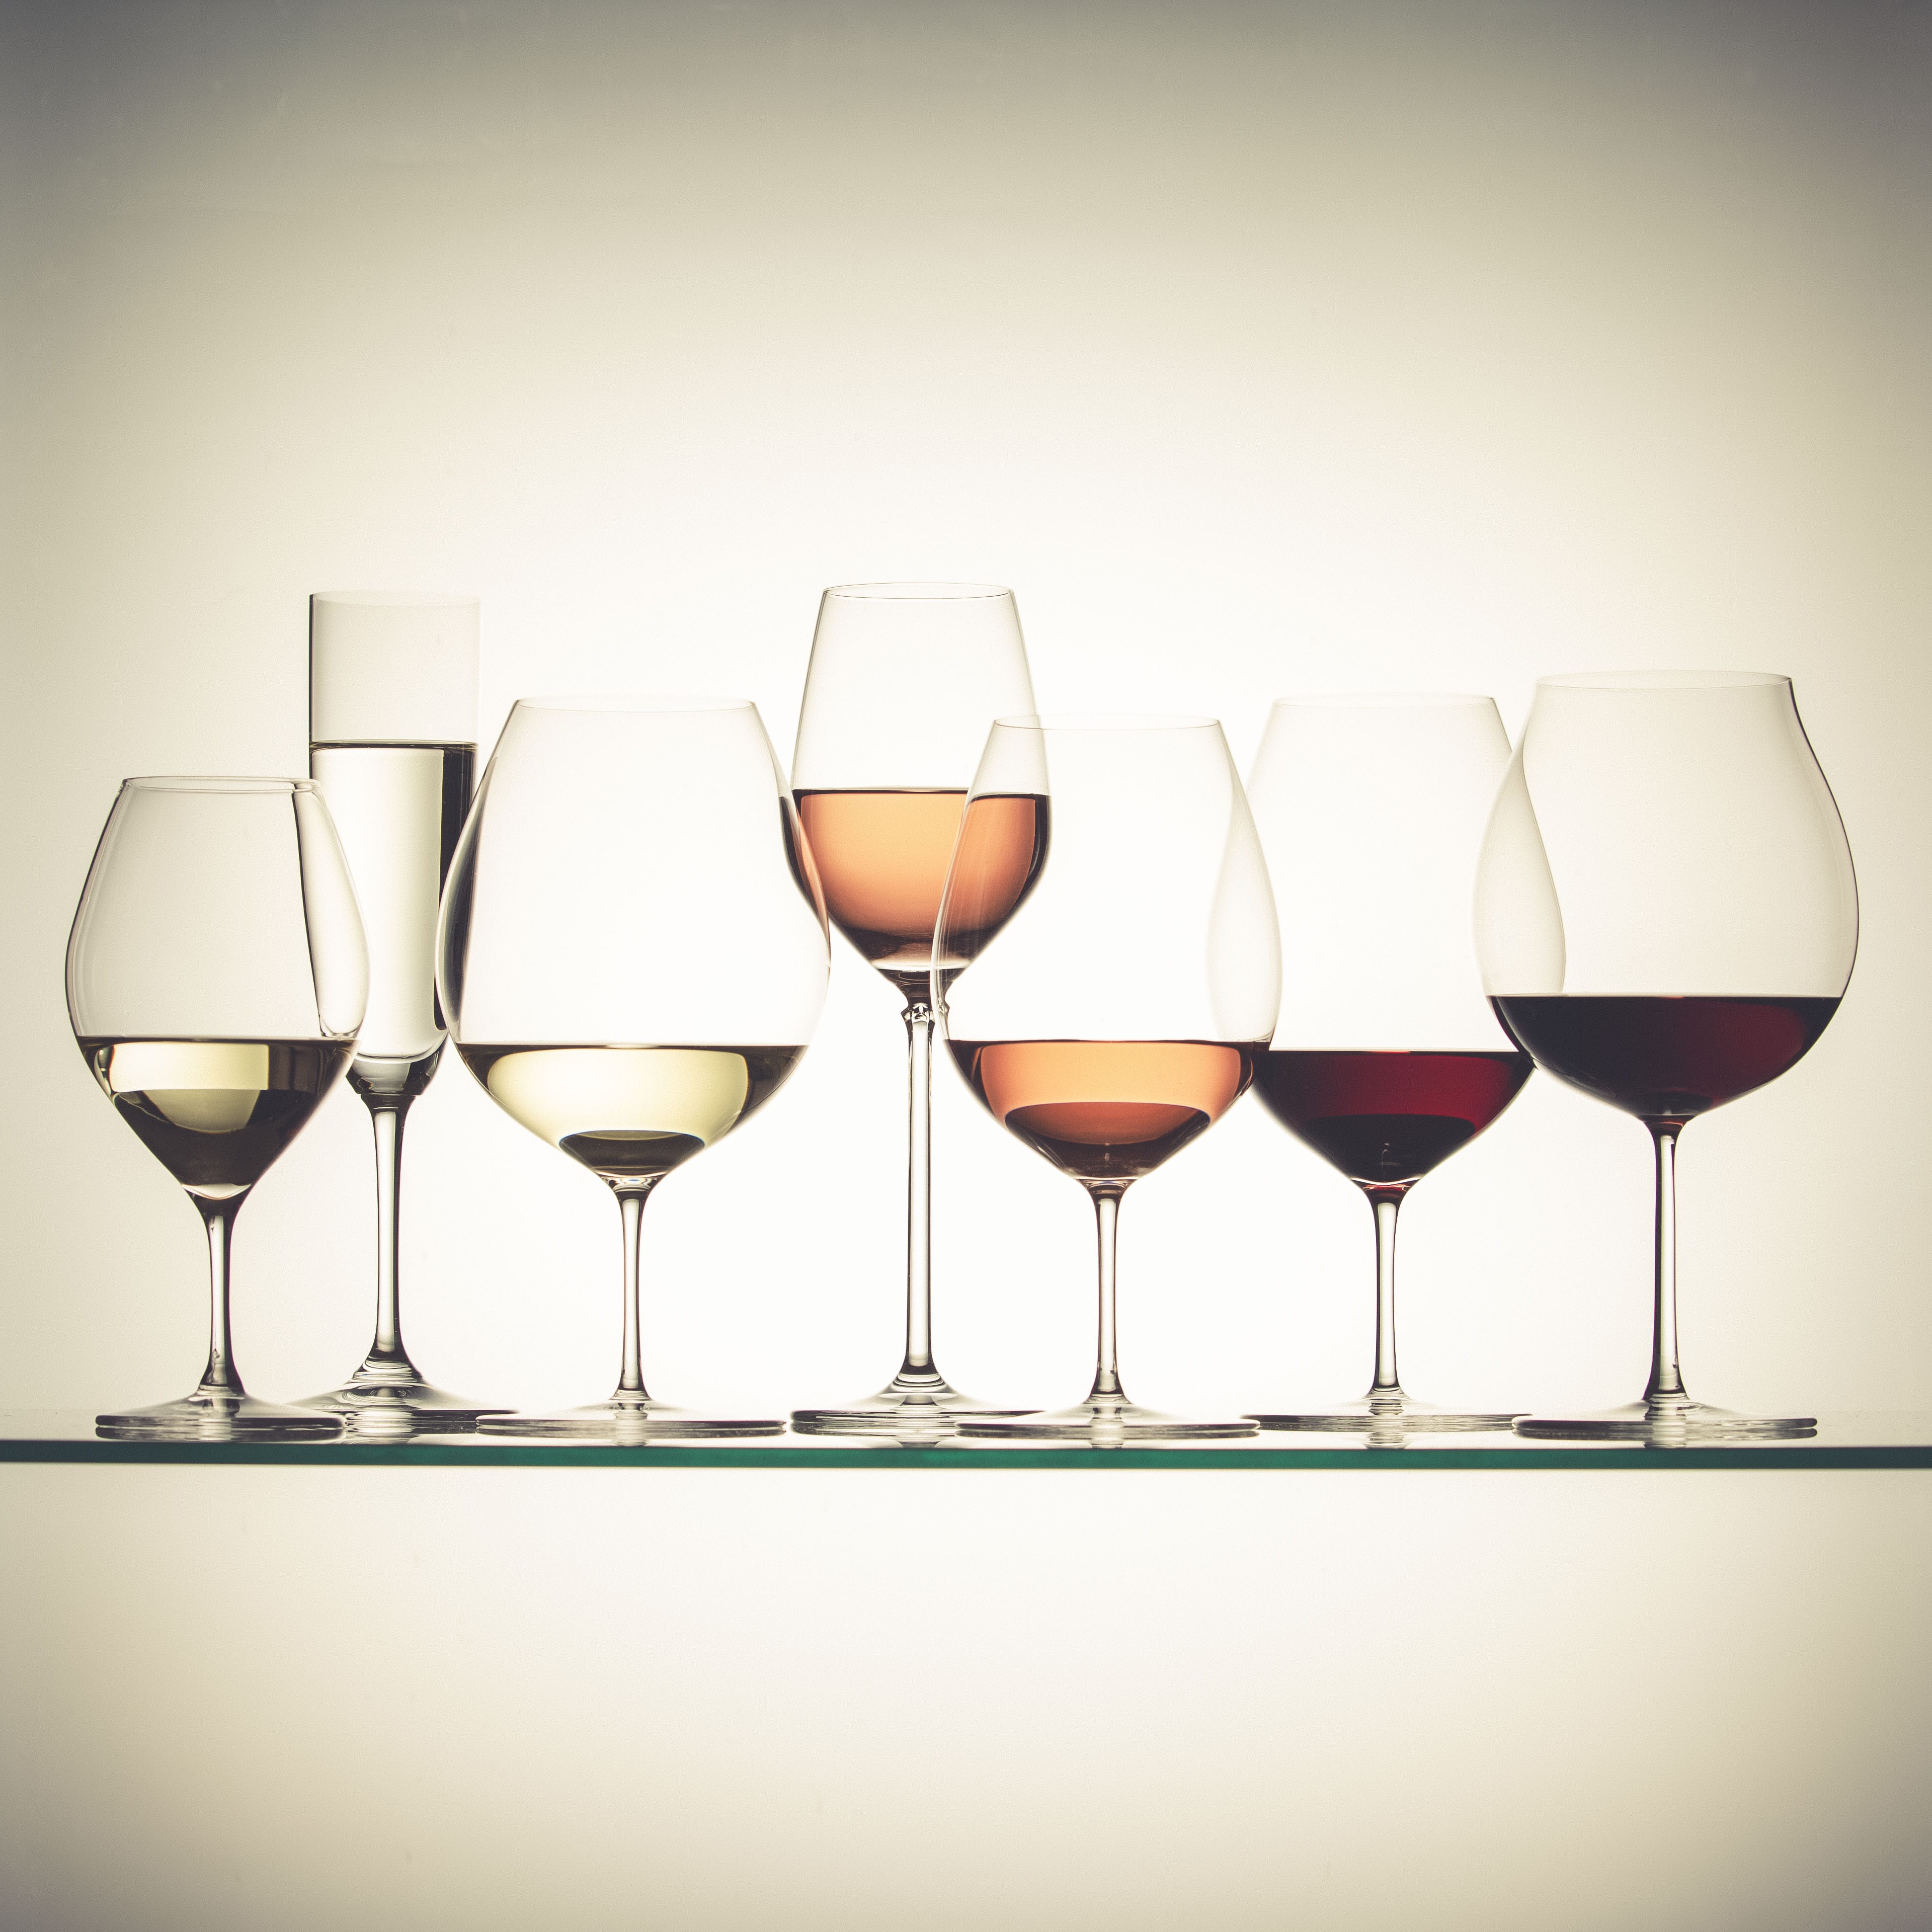 スパークリングワイン、白ワイン、赤ワインにも。頼れる万能ワイングラス。